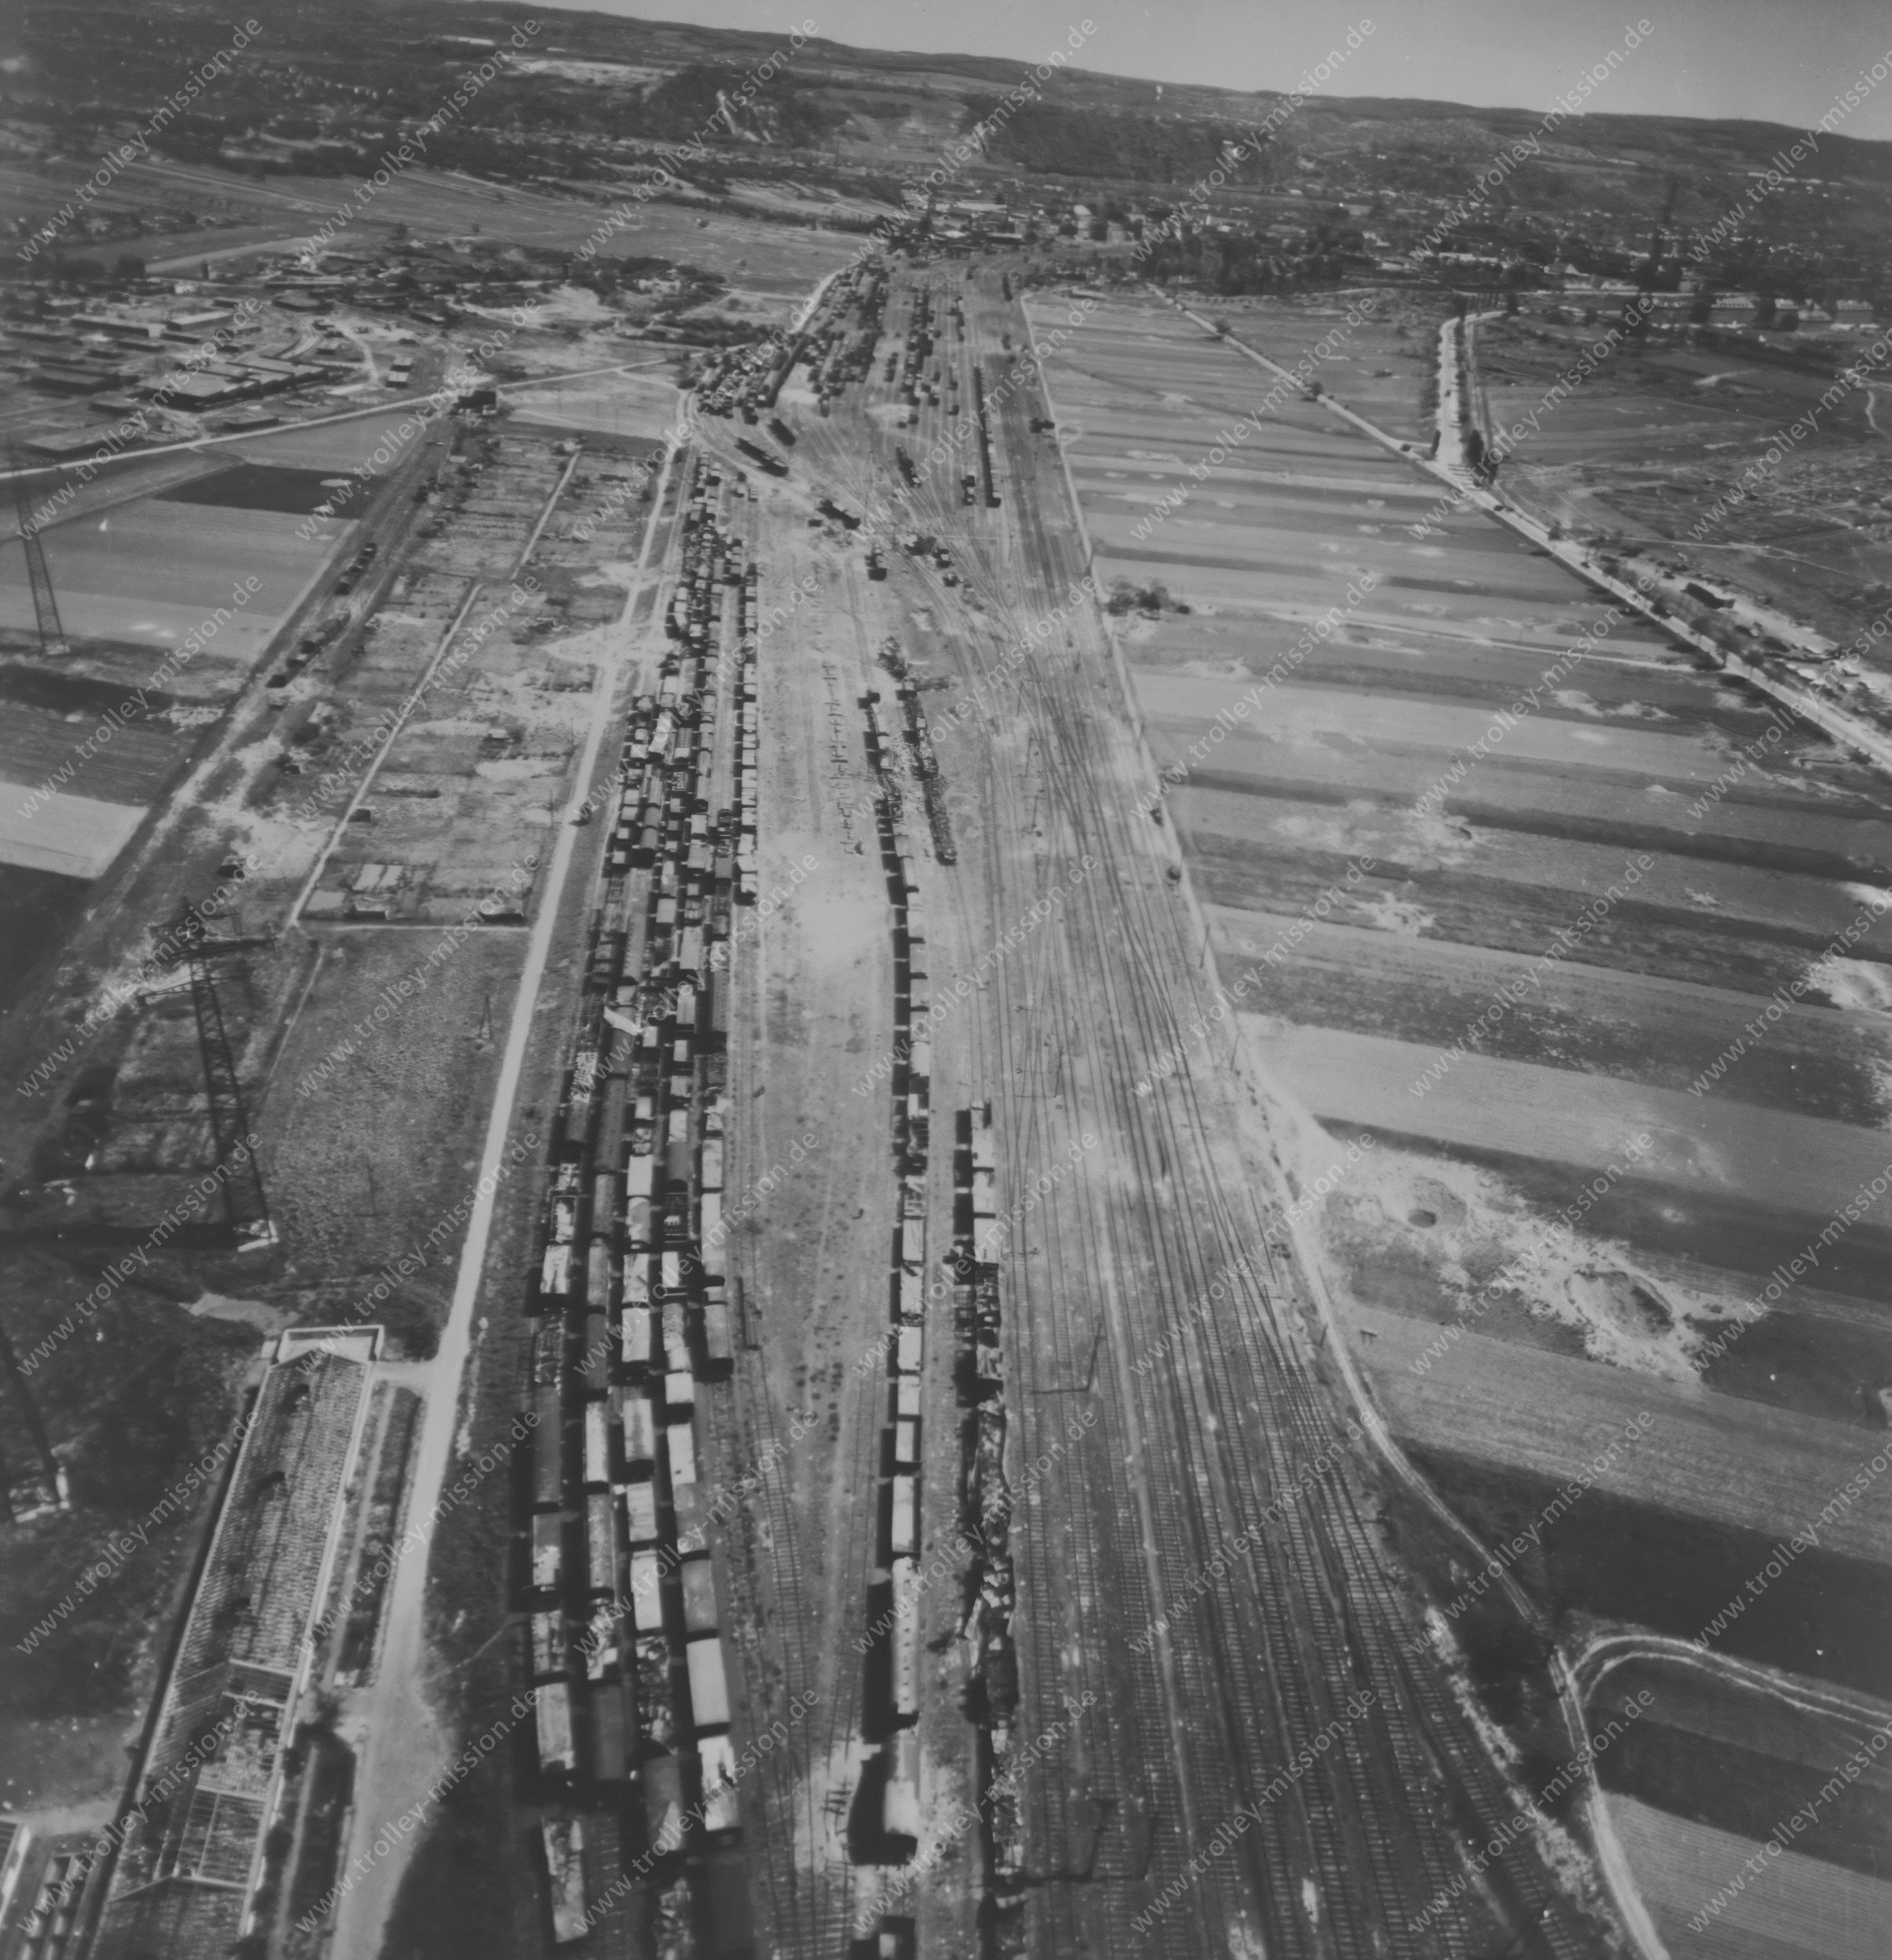 Güterbahnhof Koblenz-Lützel - Luftbild aus dem Zweiten Weltkrieg